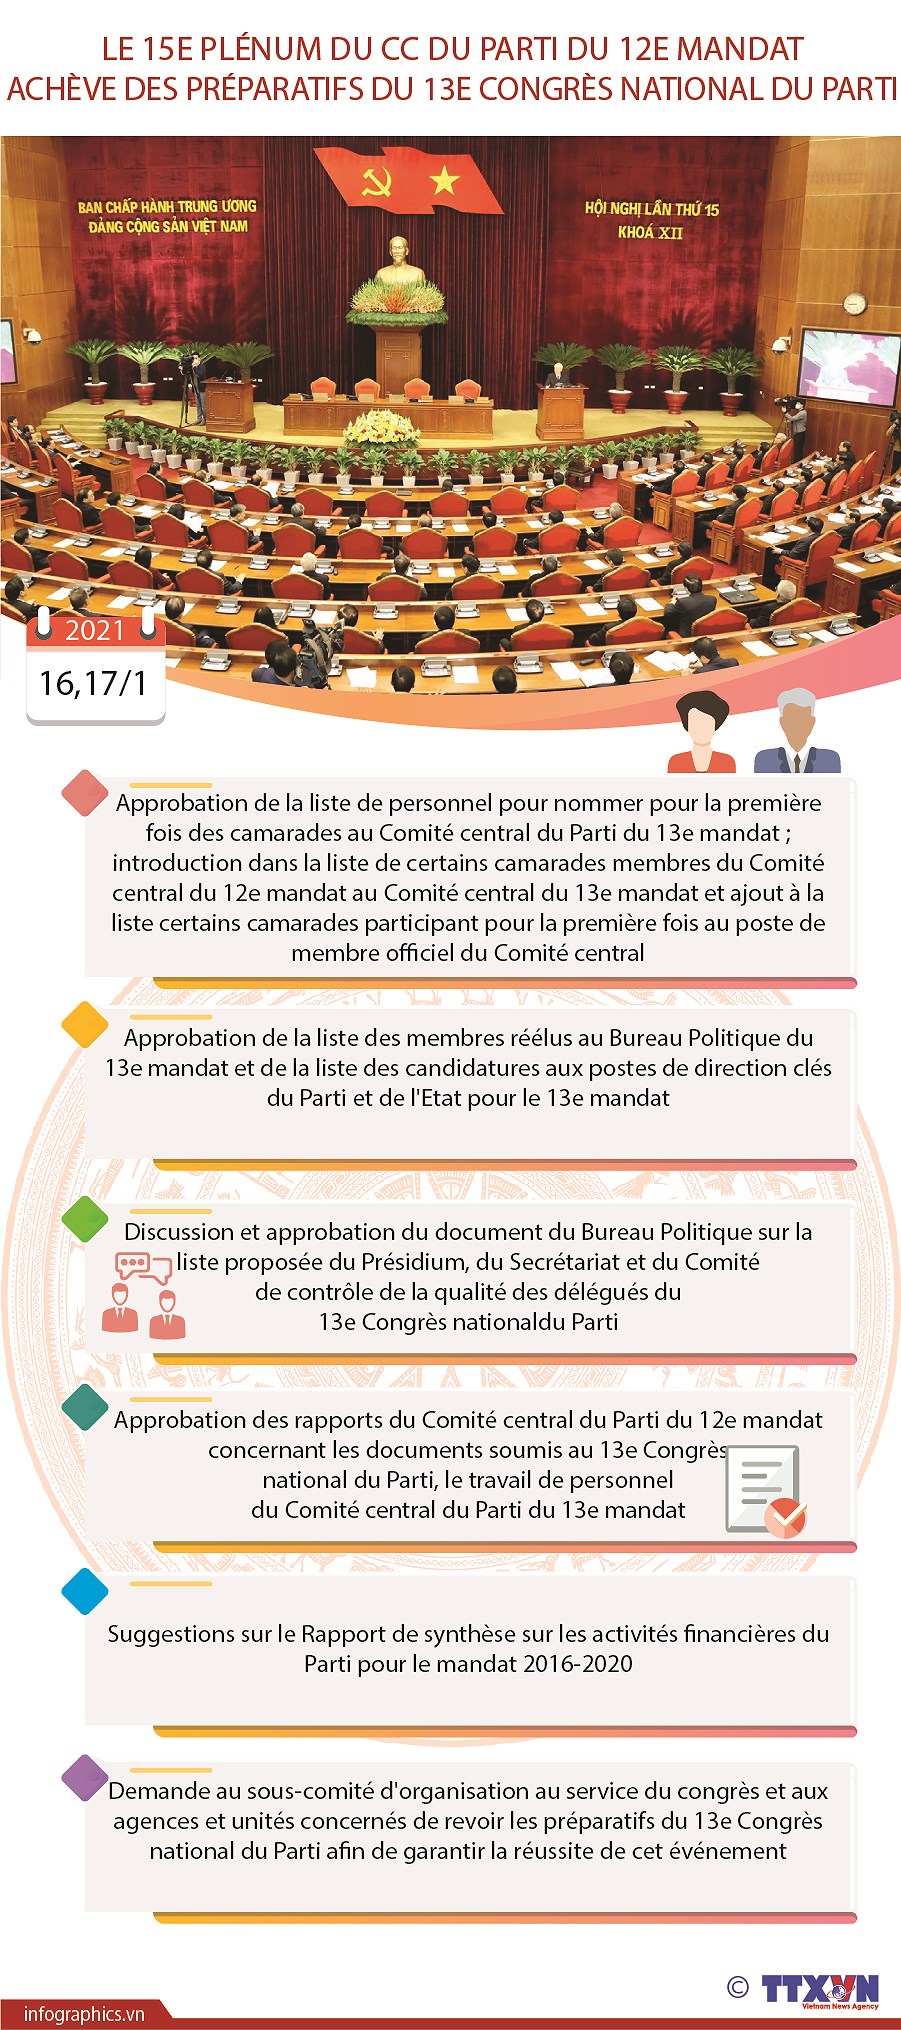 Le 15e Plenum du CC du Parti du 12e mandat acheve des preparatifs du 13e Congres national du Parti hinh anh 1